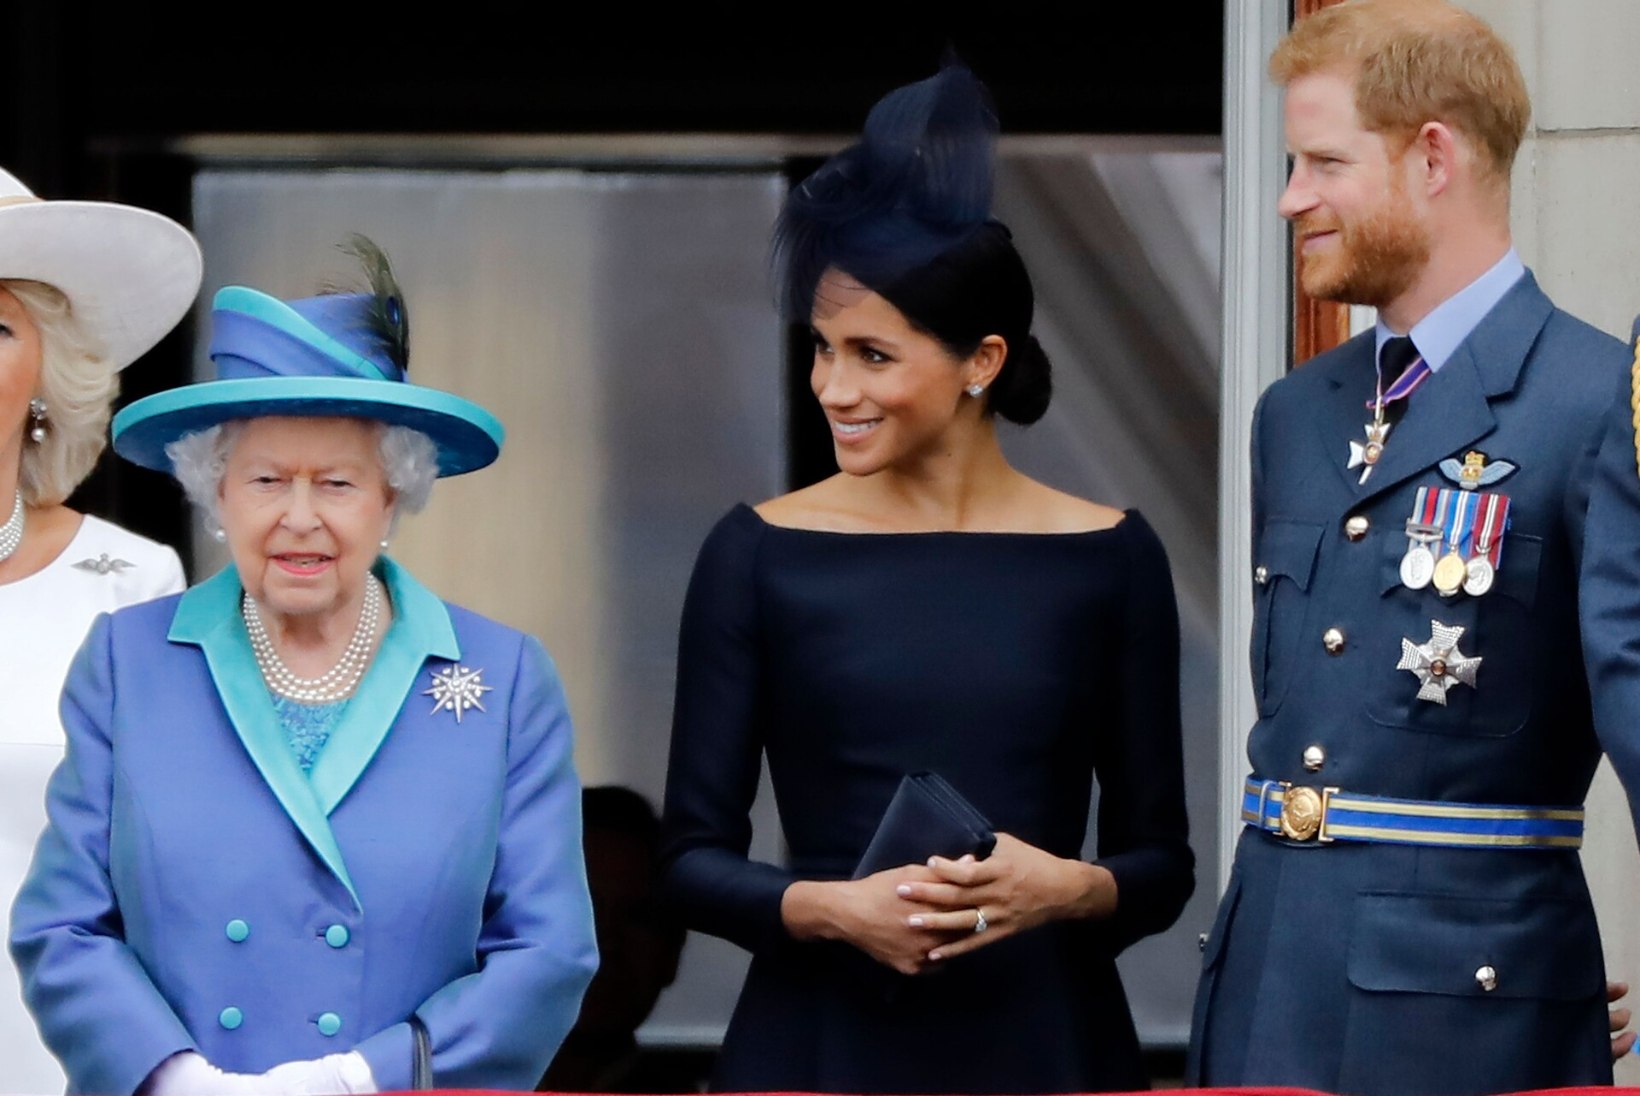 EI MINGIT VIMMA! Kuninglik pere eesotsas Elizabeth II-ga soovib Meghanile õnne